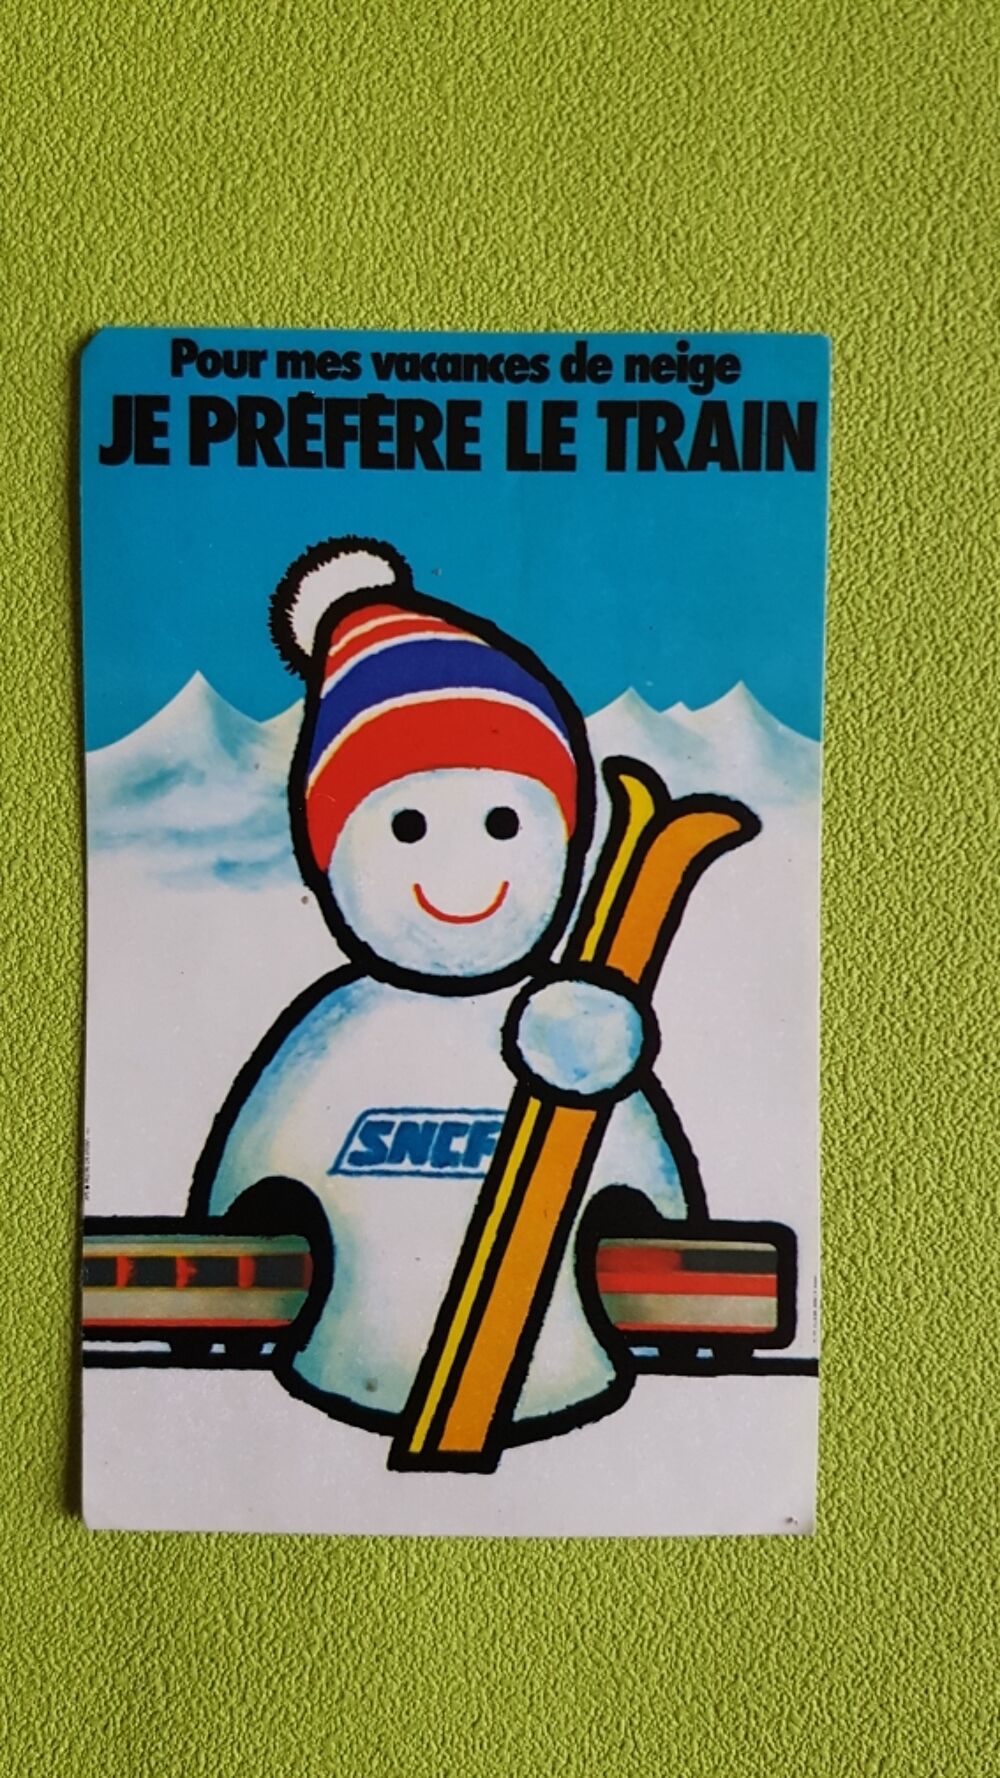 SNCF 